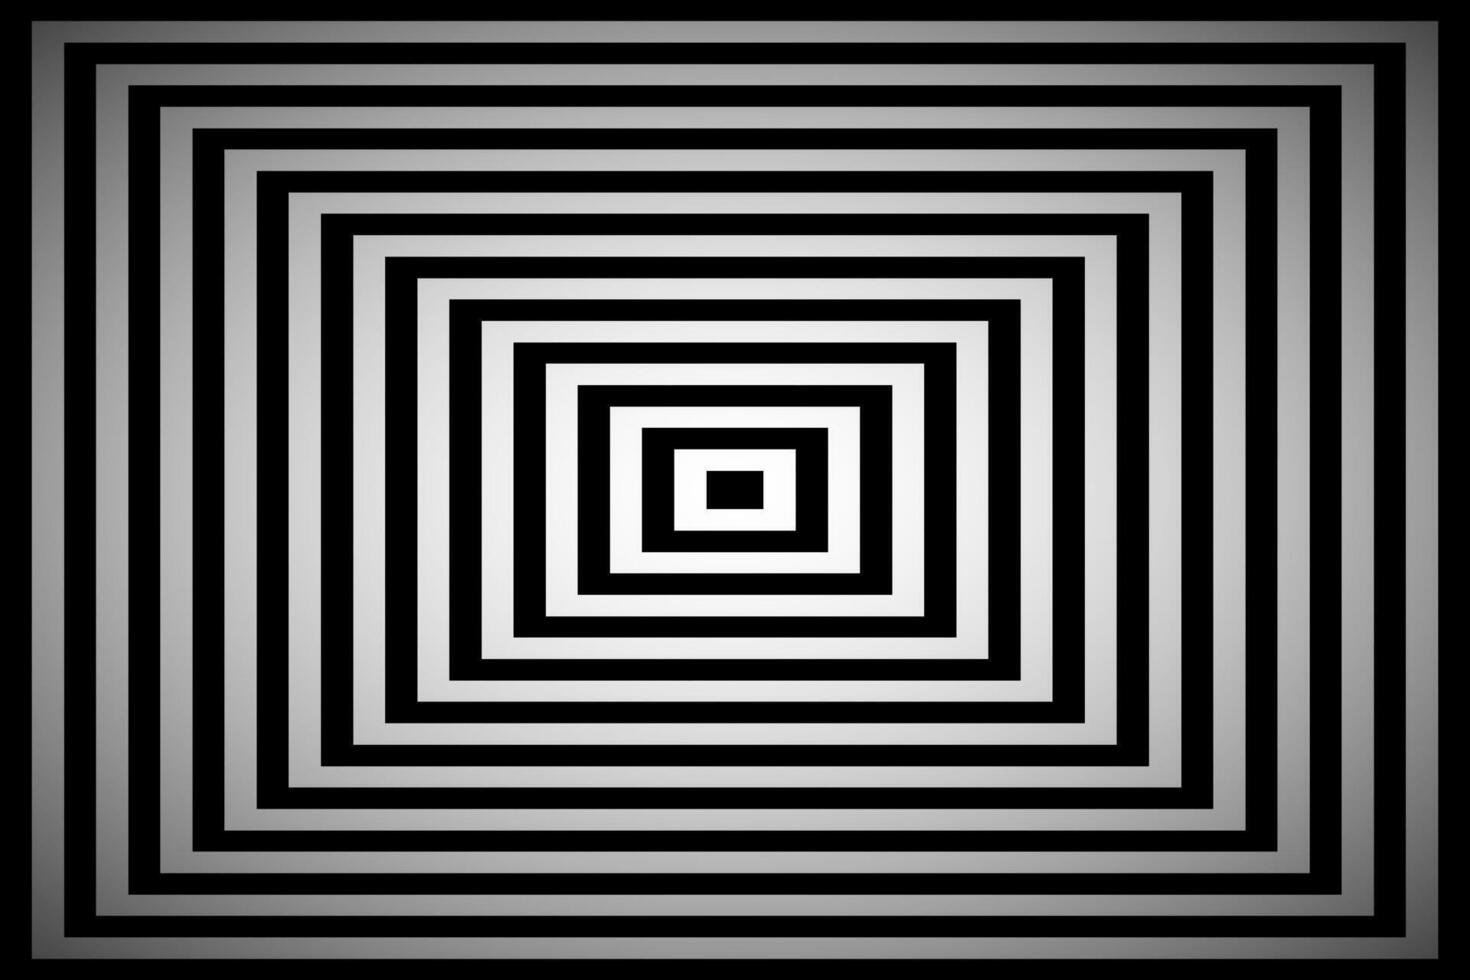 schwarz und Weiß Platz Illusion, einfach abstrakt Pyramide Hintergrund vektor